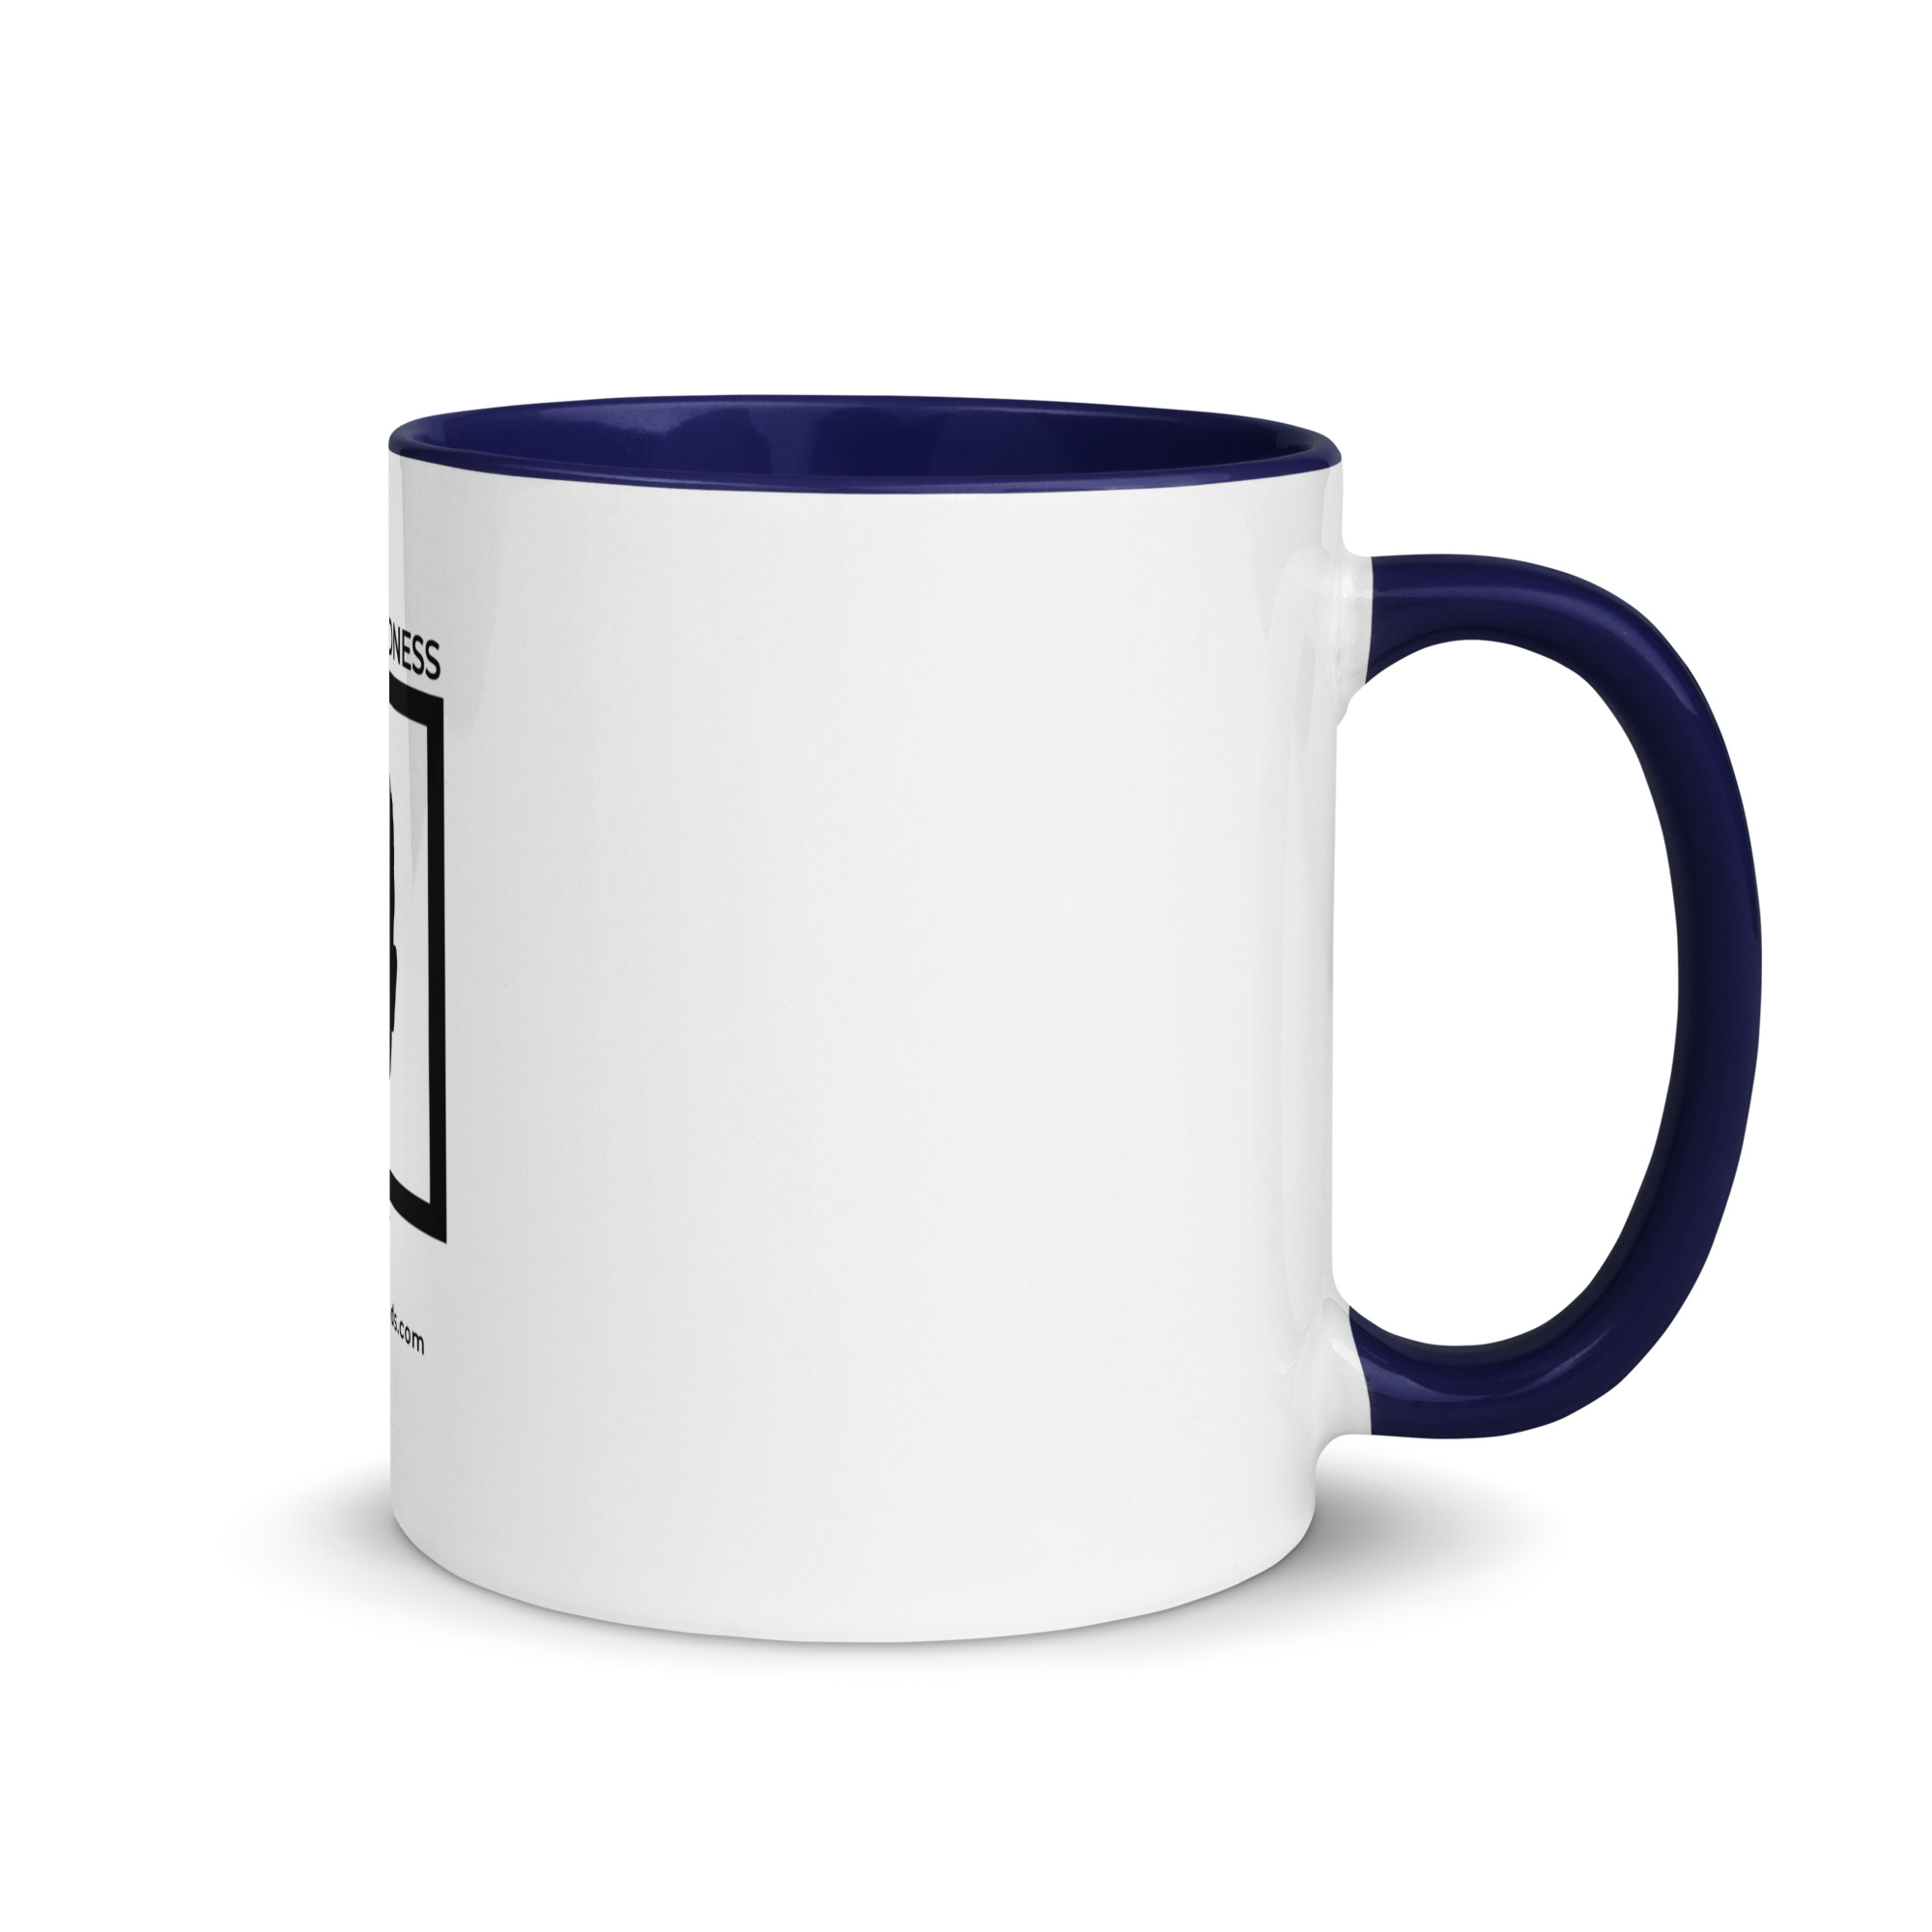 white-ceramic-mug-with-color-inside-dark-blue-11-oz-right-6522a1a403ad8.jpg